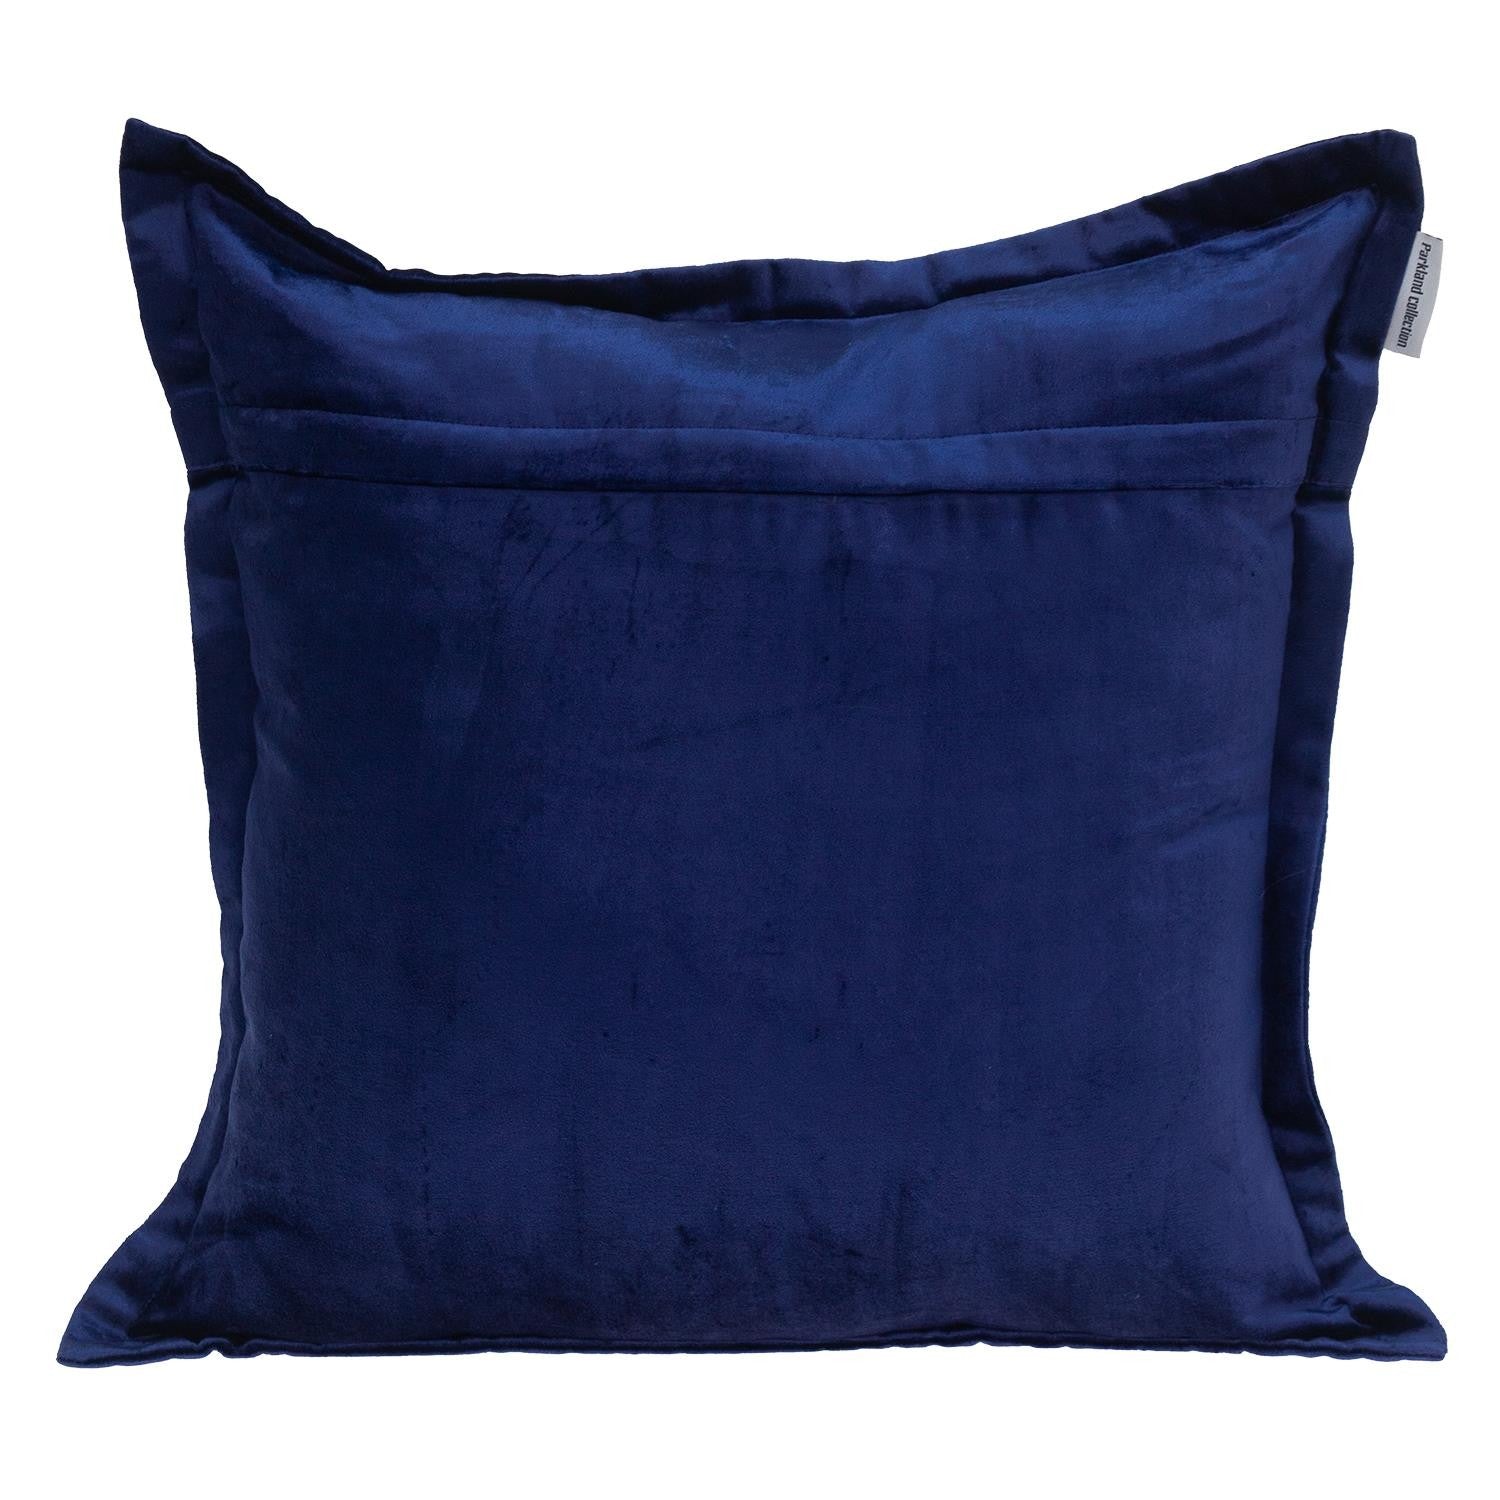 Premier 20" Soft Touch Royal Blue Solid Color Accent Pillow